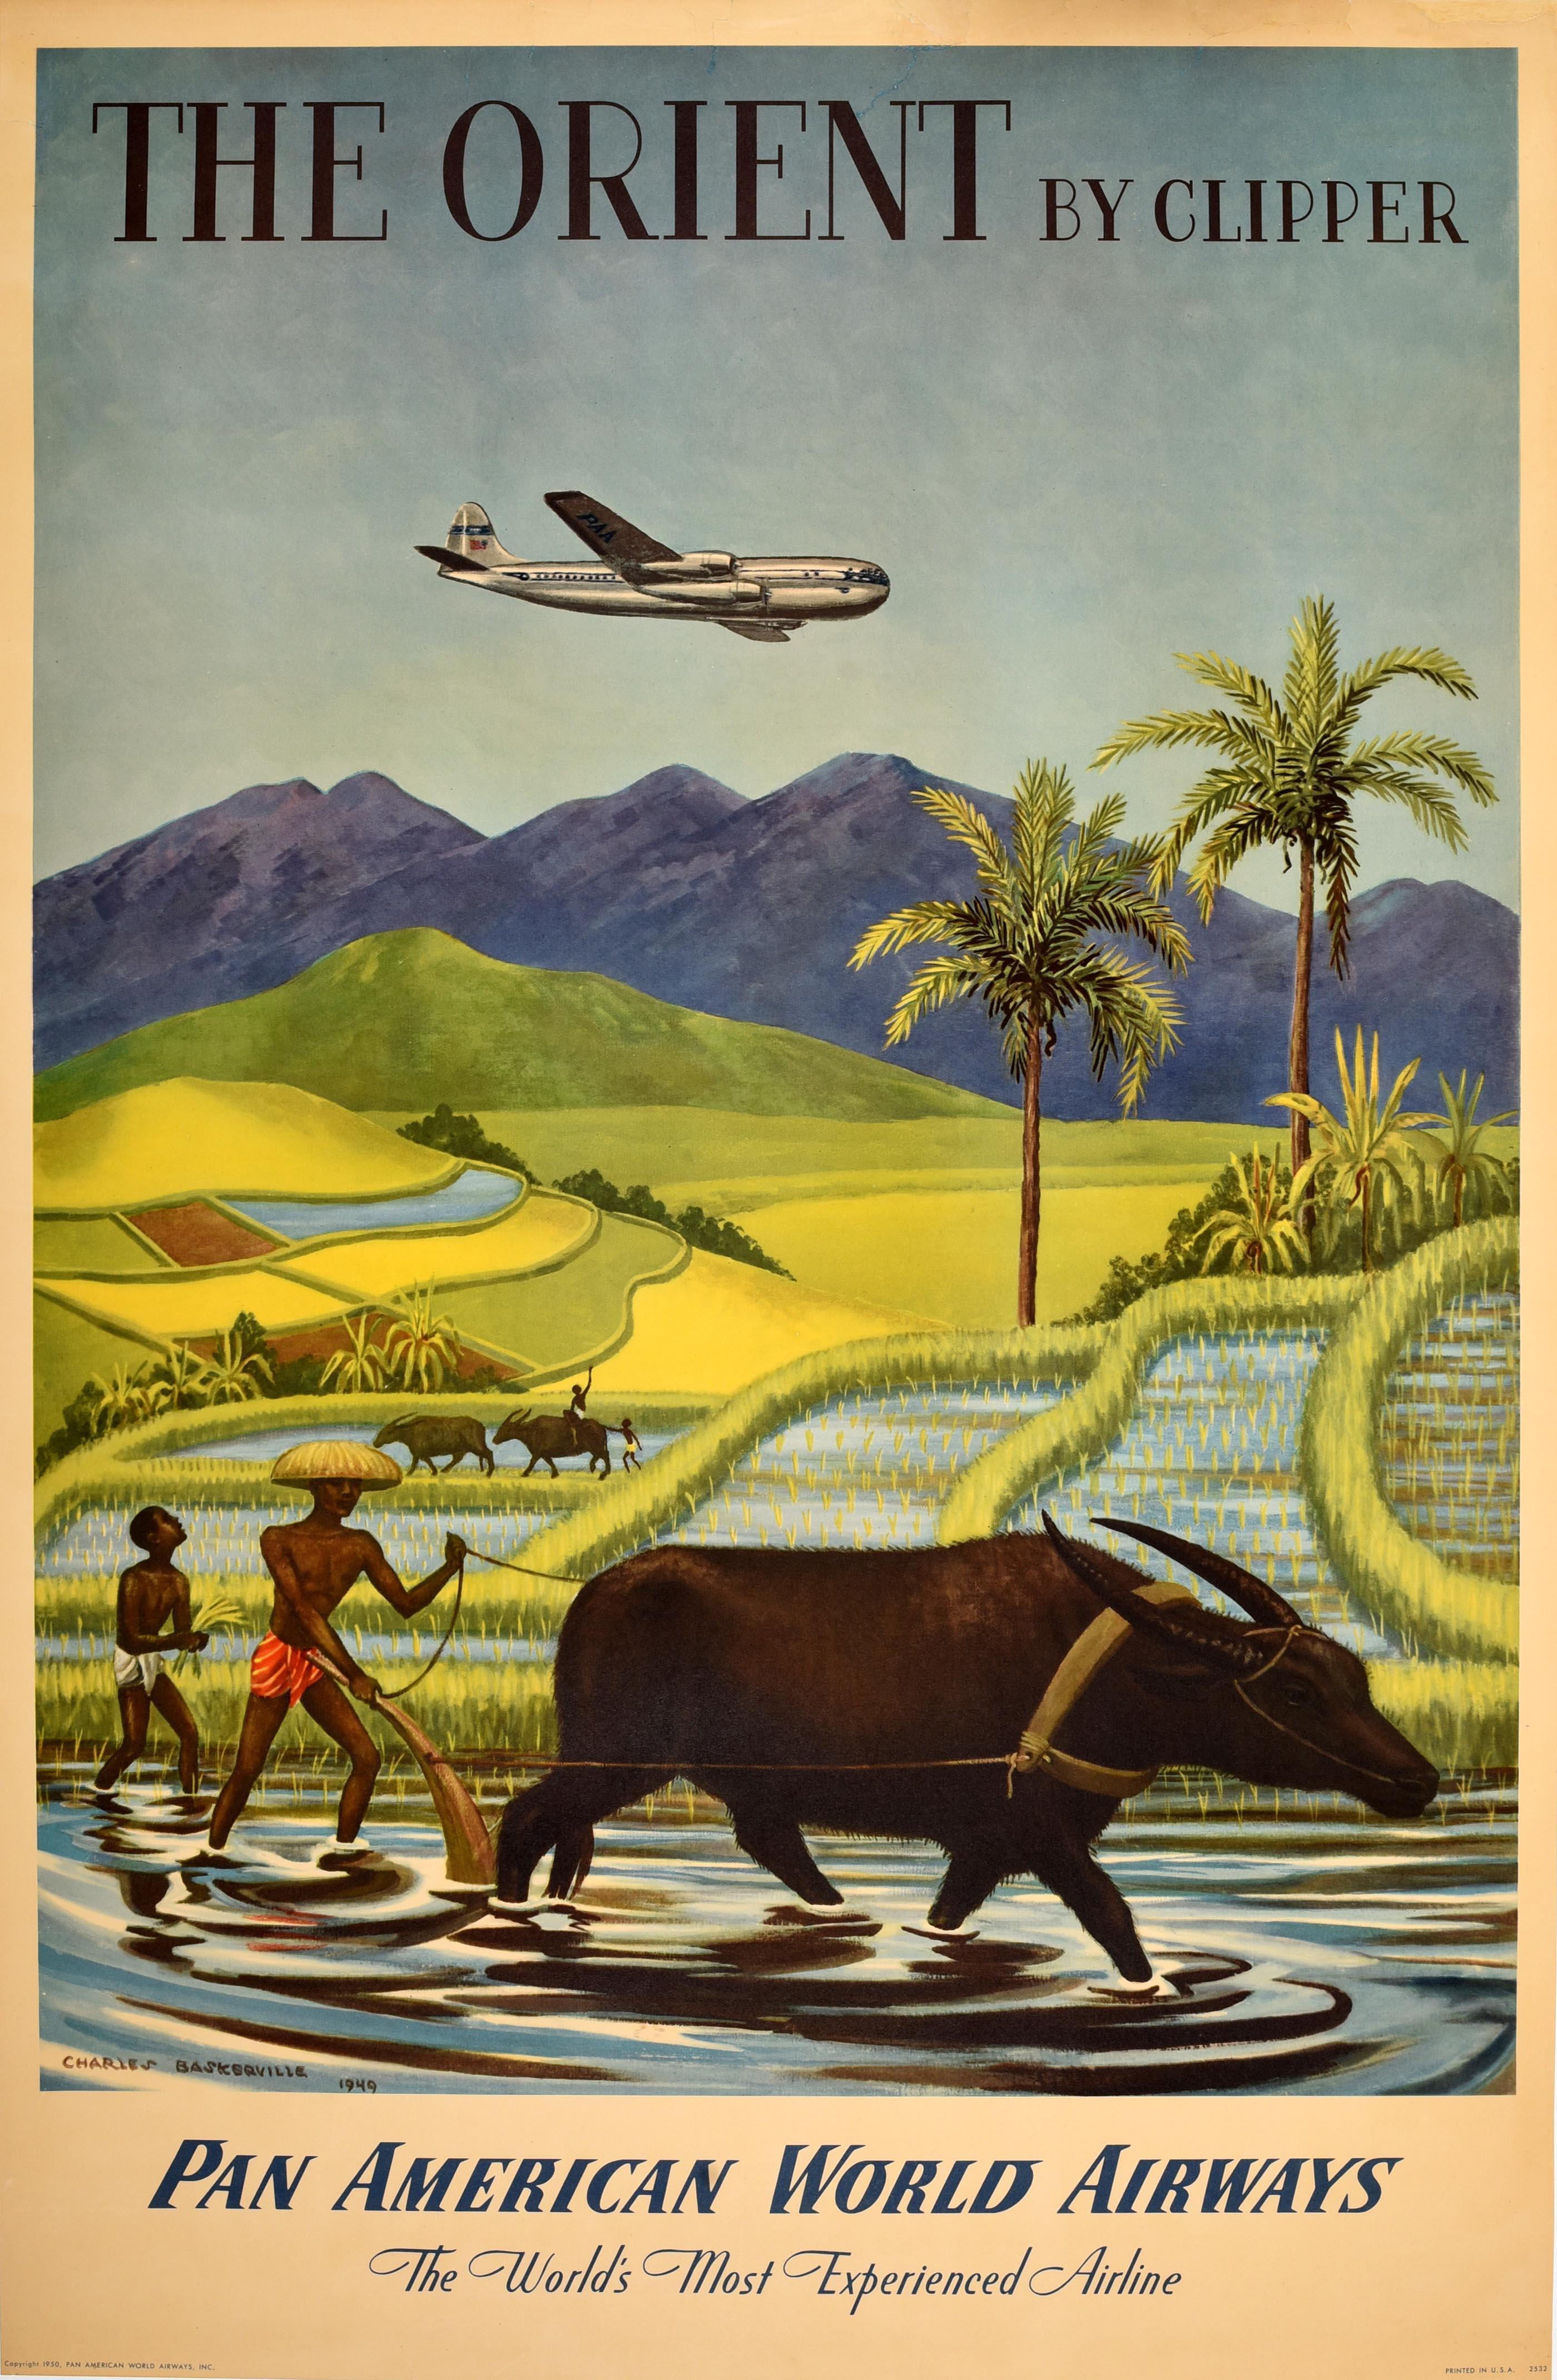 Charles Baskerville Print – Original Vintage Asiatisches Reiseplakat Pan Am The Orient von Clipper Rice Fields, Original